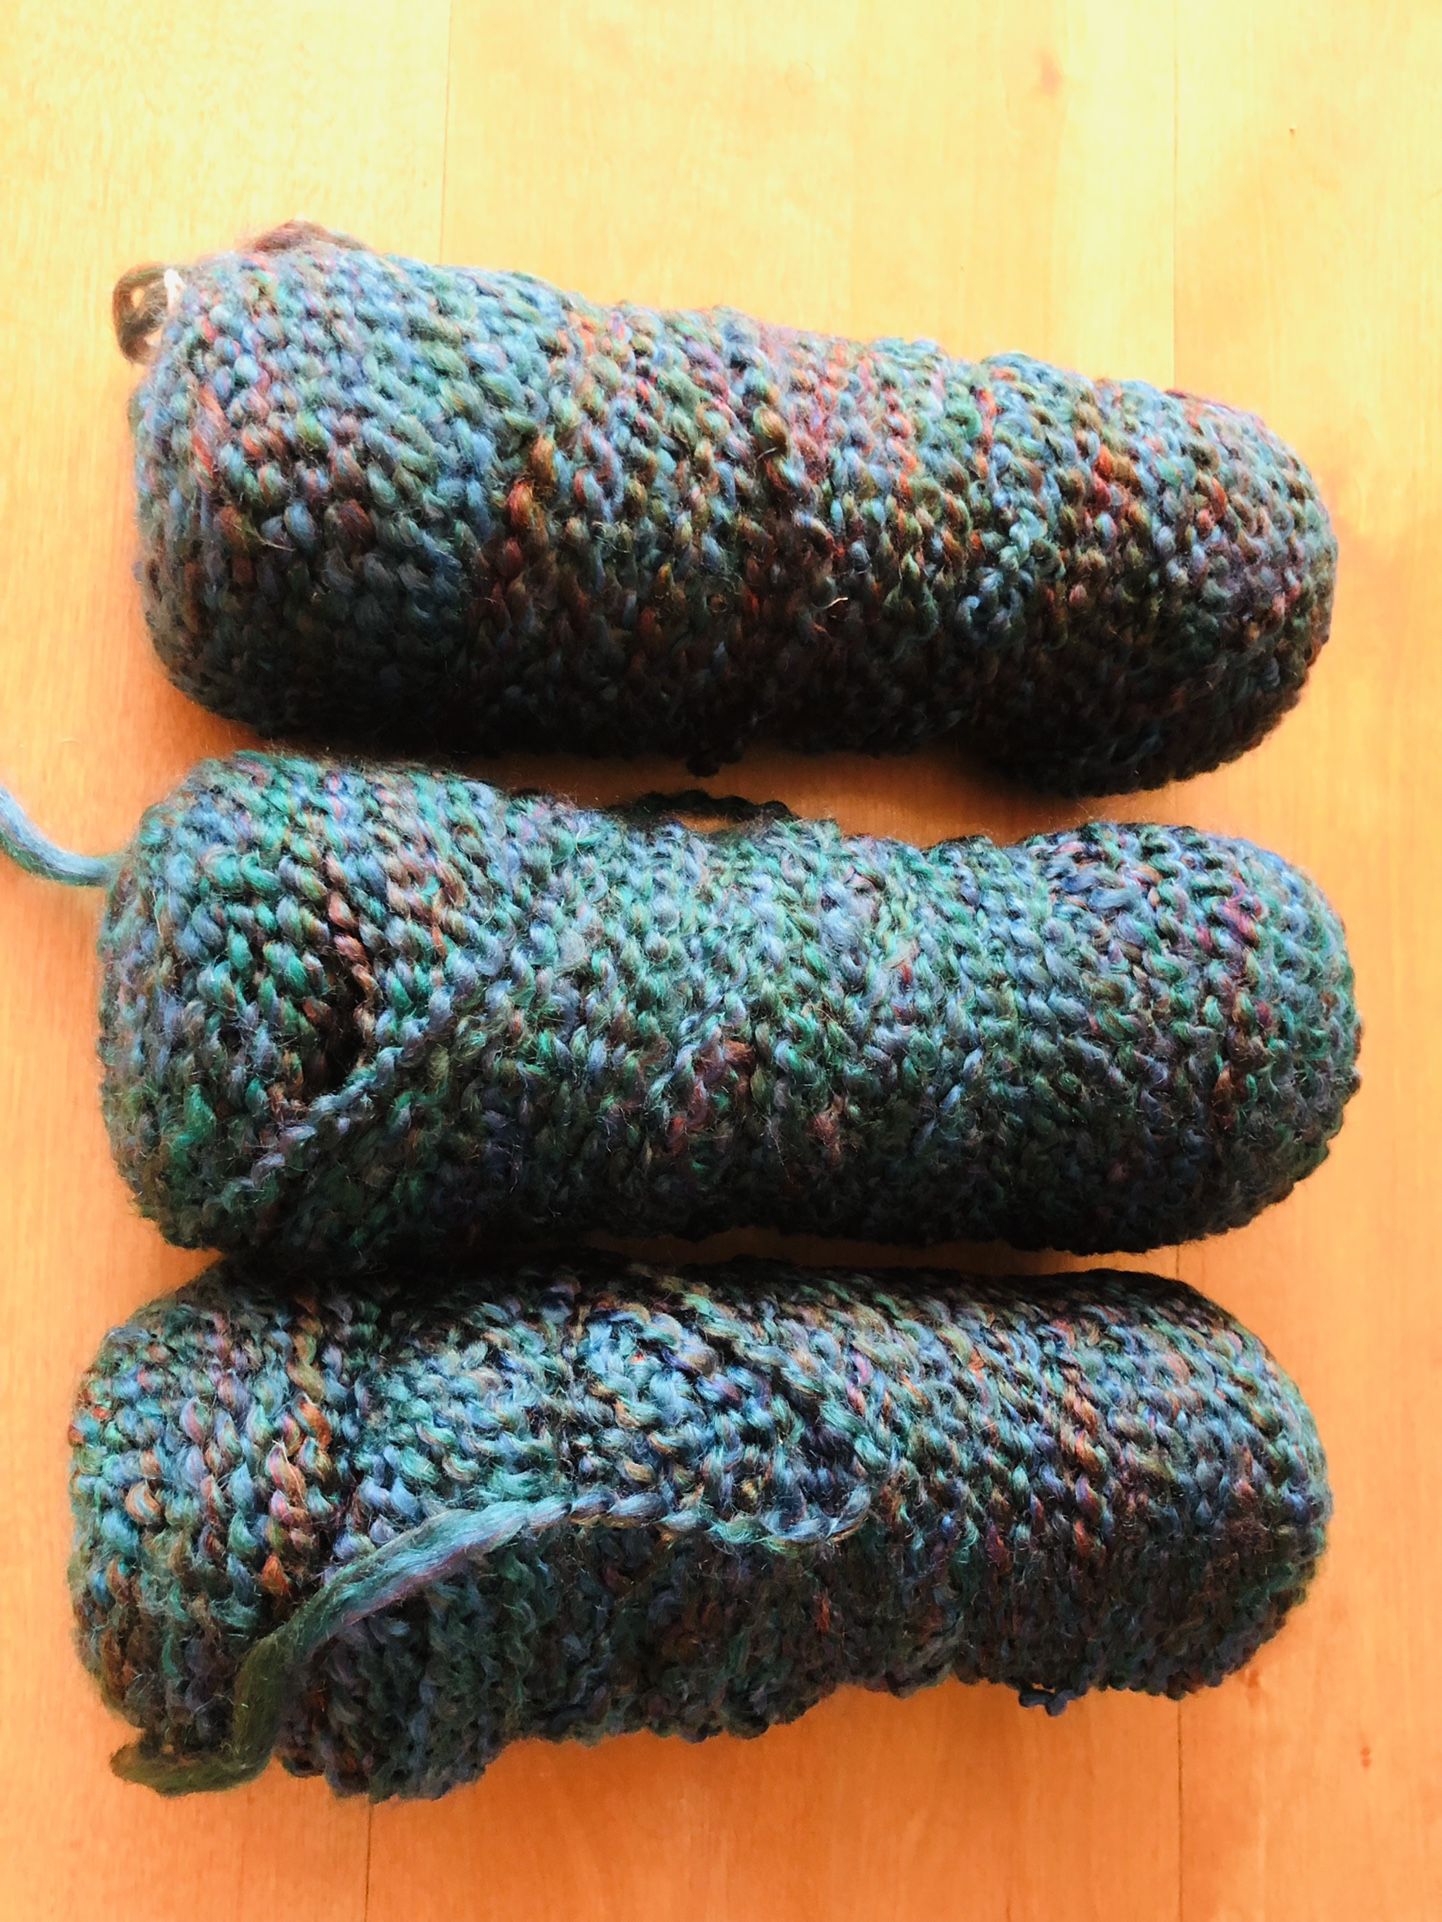 3 Bundle Of Yarn